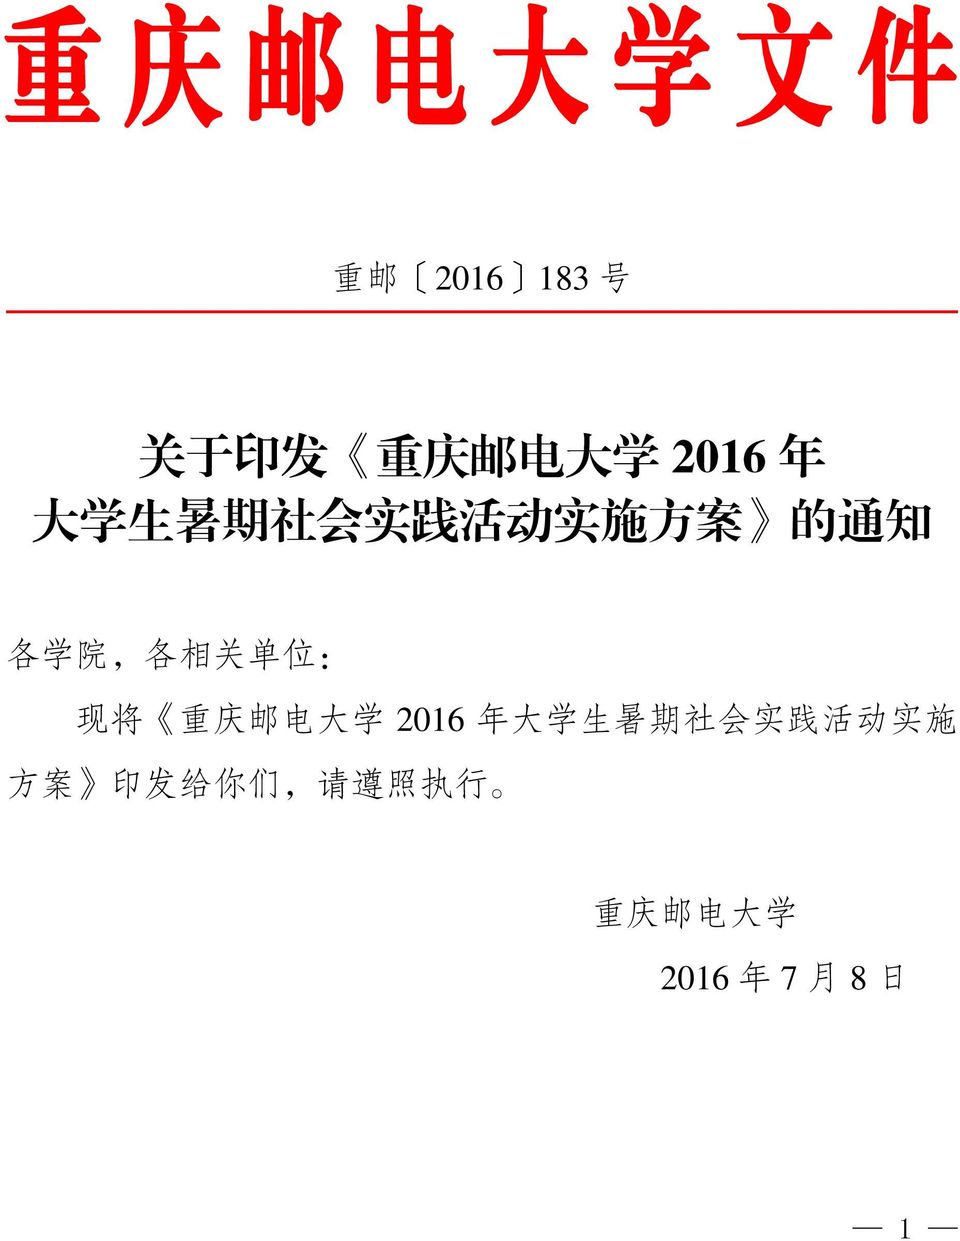 将 重 庆 邮 电 大 学 2016 年 大 学 生 暑 期 社 会 实 践 活 动 实 施 方